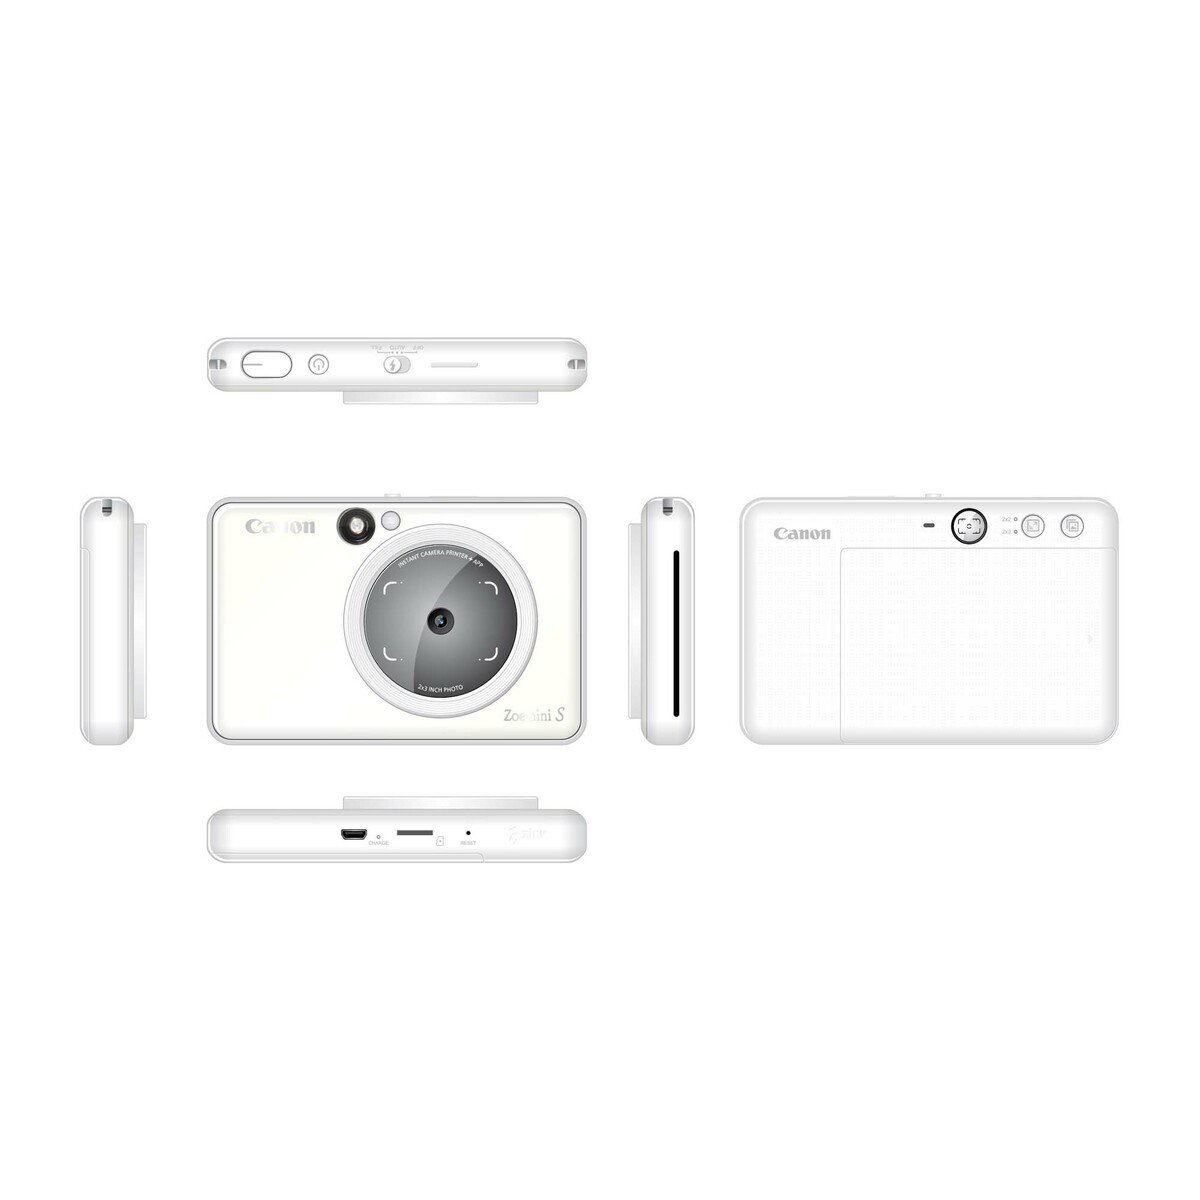 كانون كاميرا فورية مع طابعة فورية ملونة زوي ميني اس 8ميجابيكسل أبيض